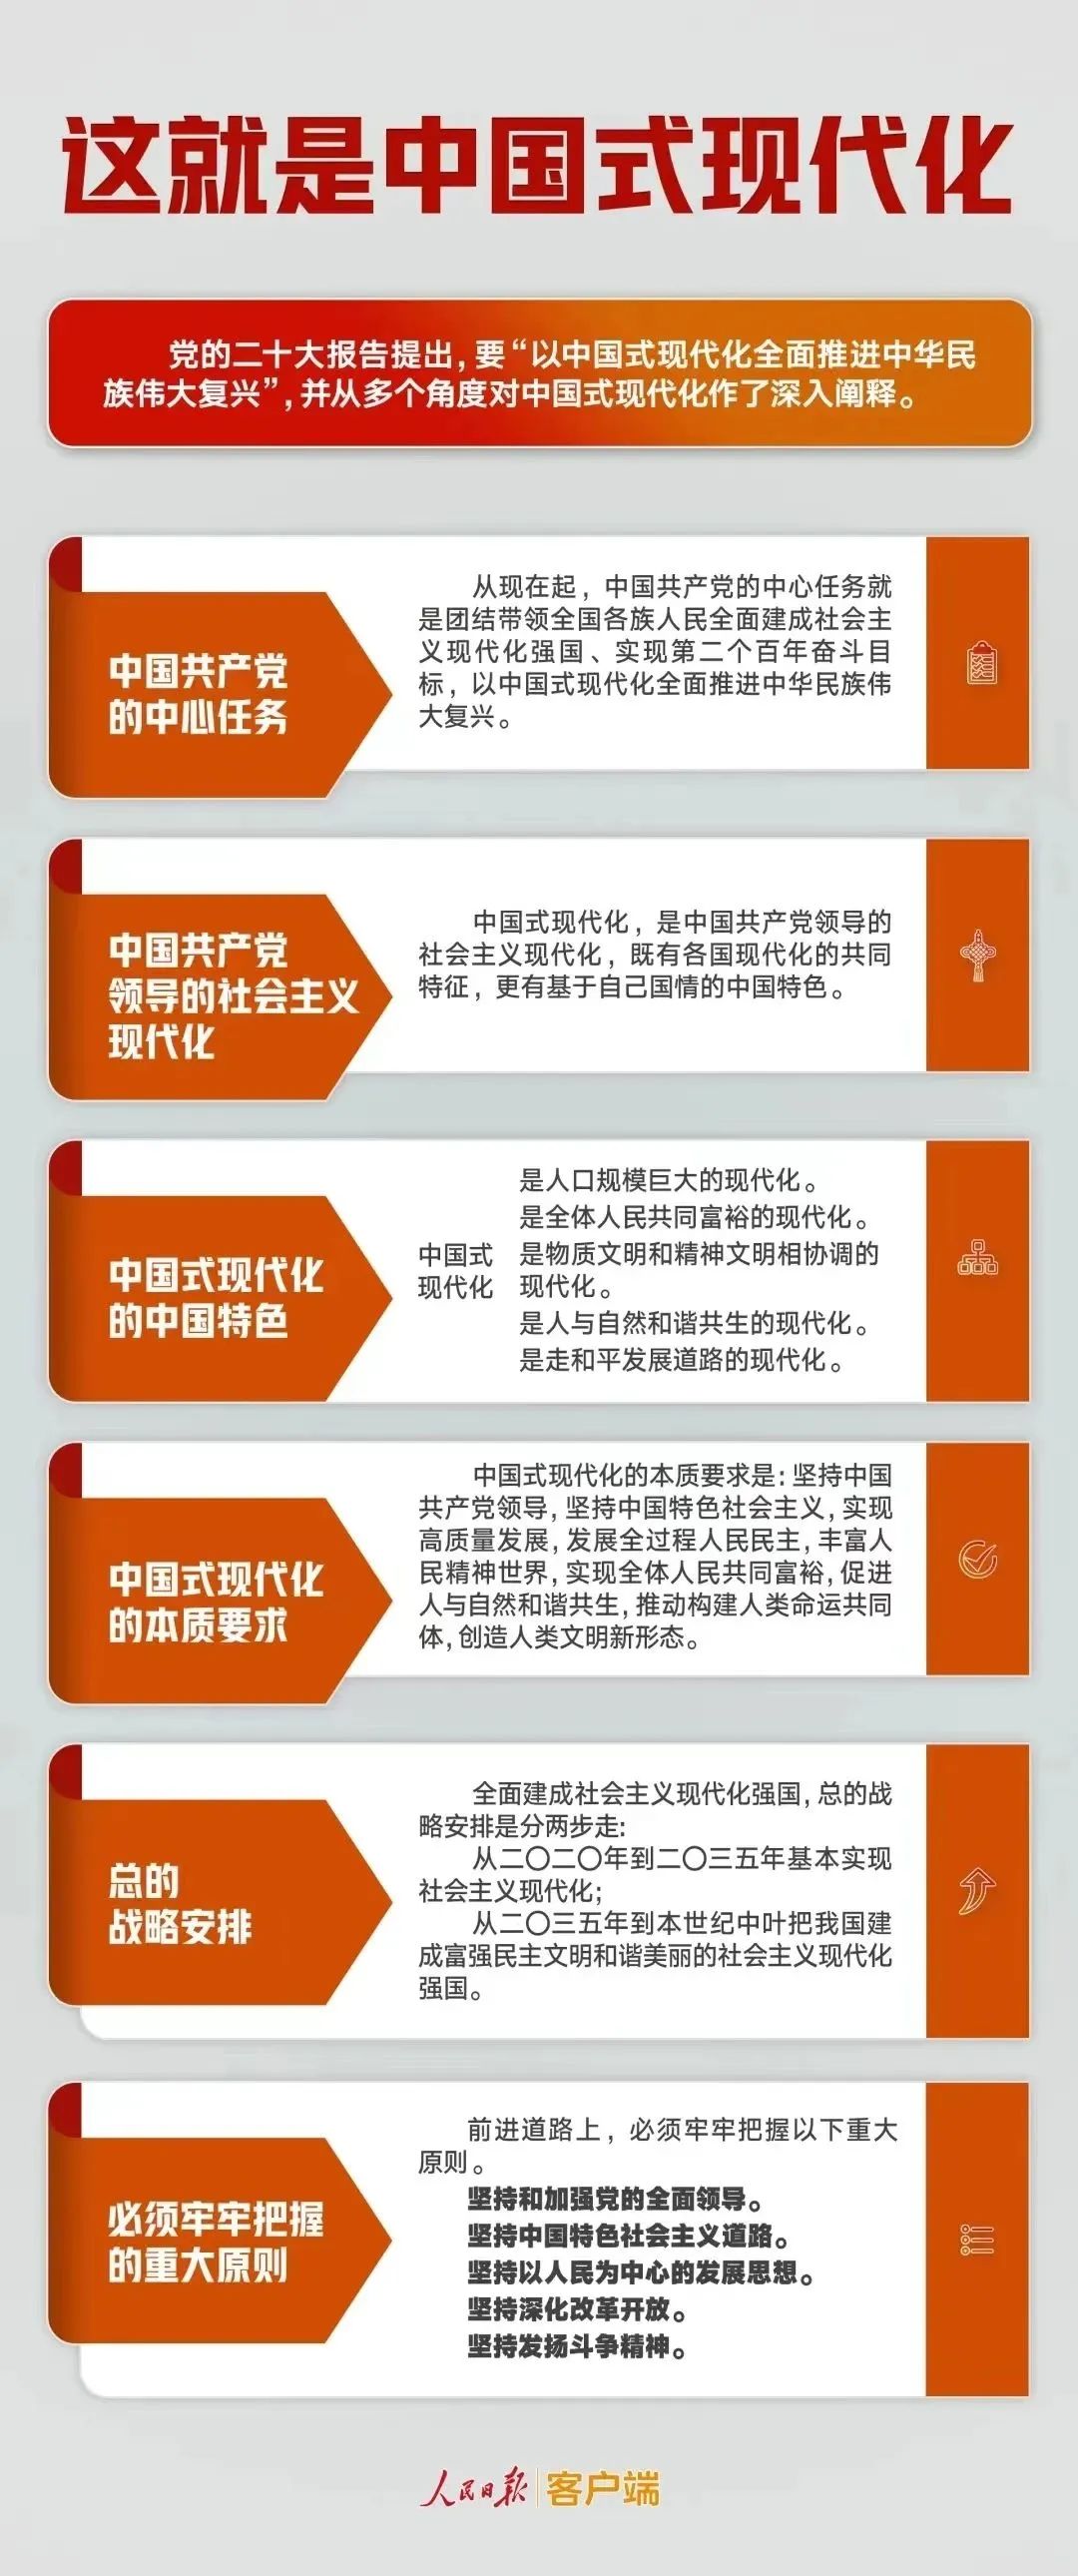 几段话读懂中国式现代化.jpg